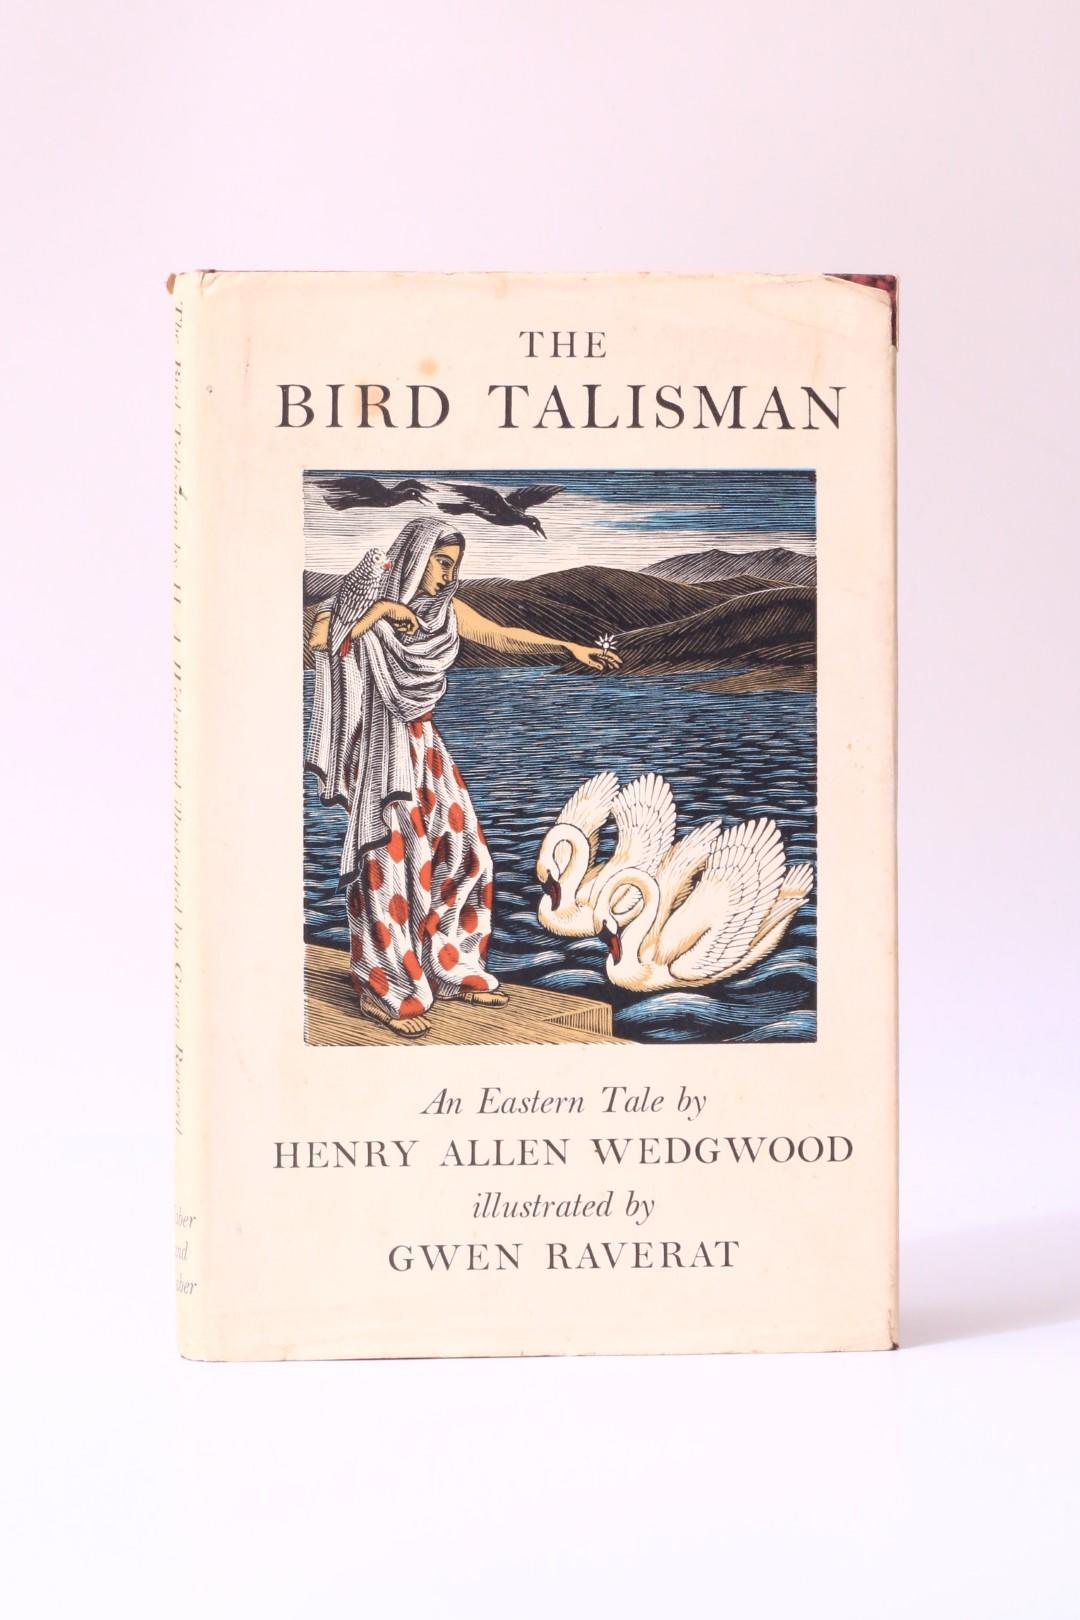 Henry Allen Wedgwood - The Bird Talisman: An Eastern Tale - Faber, 1939, First Thus.